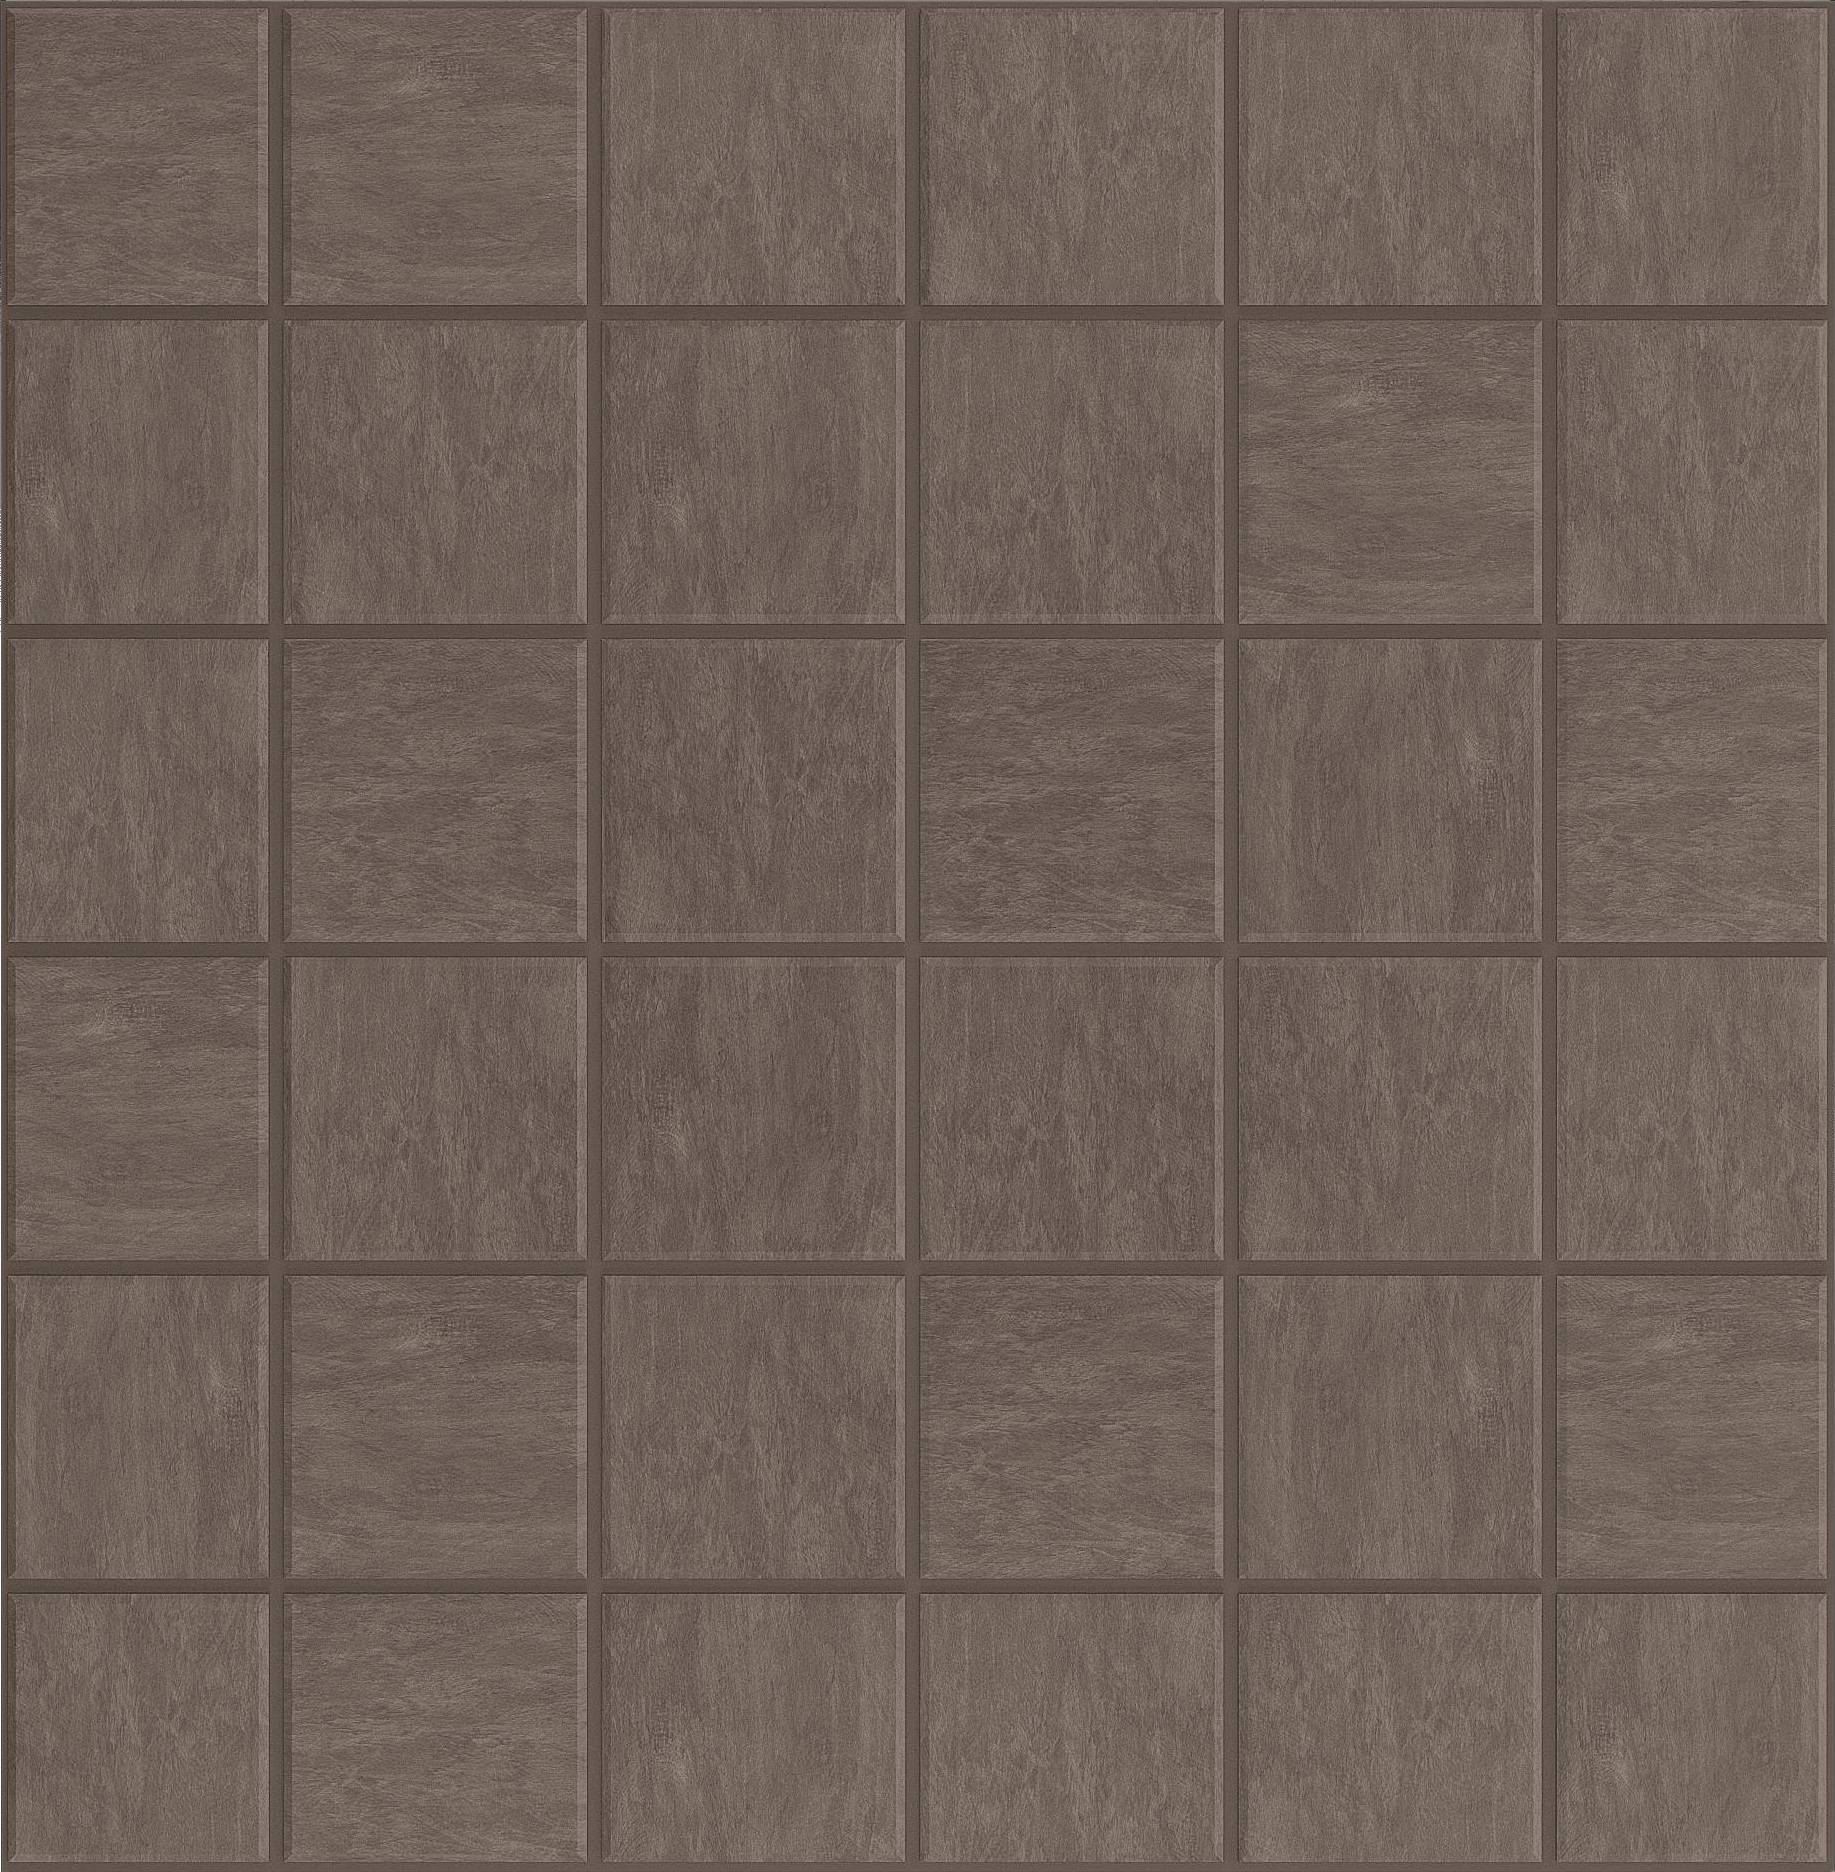 Мозаика Ametis Spectrum Chocolate SR07 (5x5) Непол. 30x30 мозаика ametis spectrum grey sr01 5x5 непол 30x30